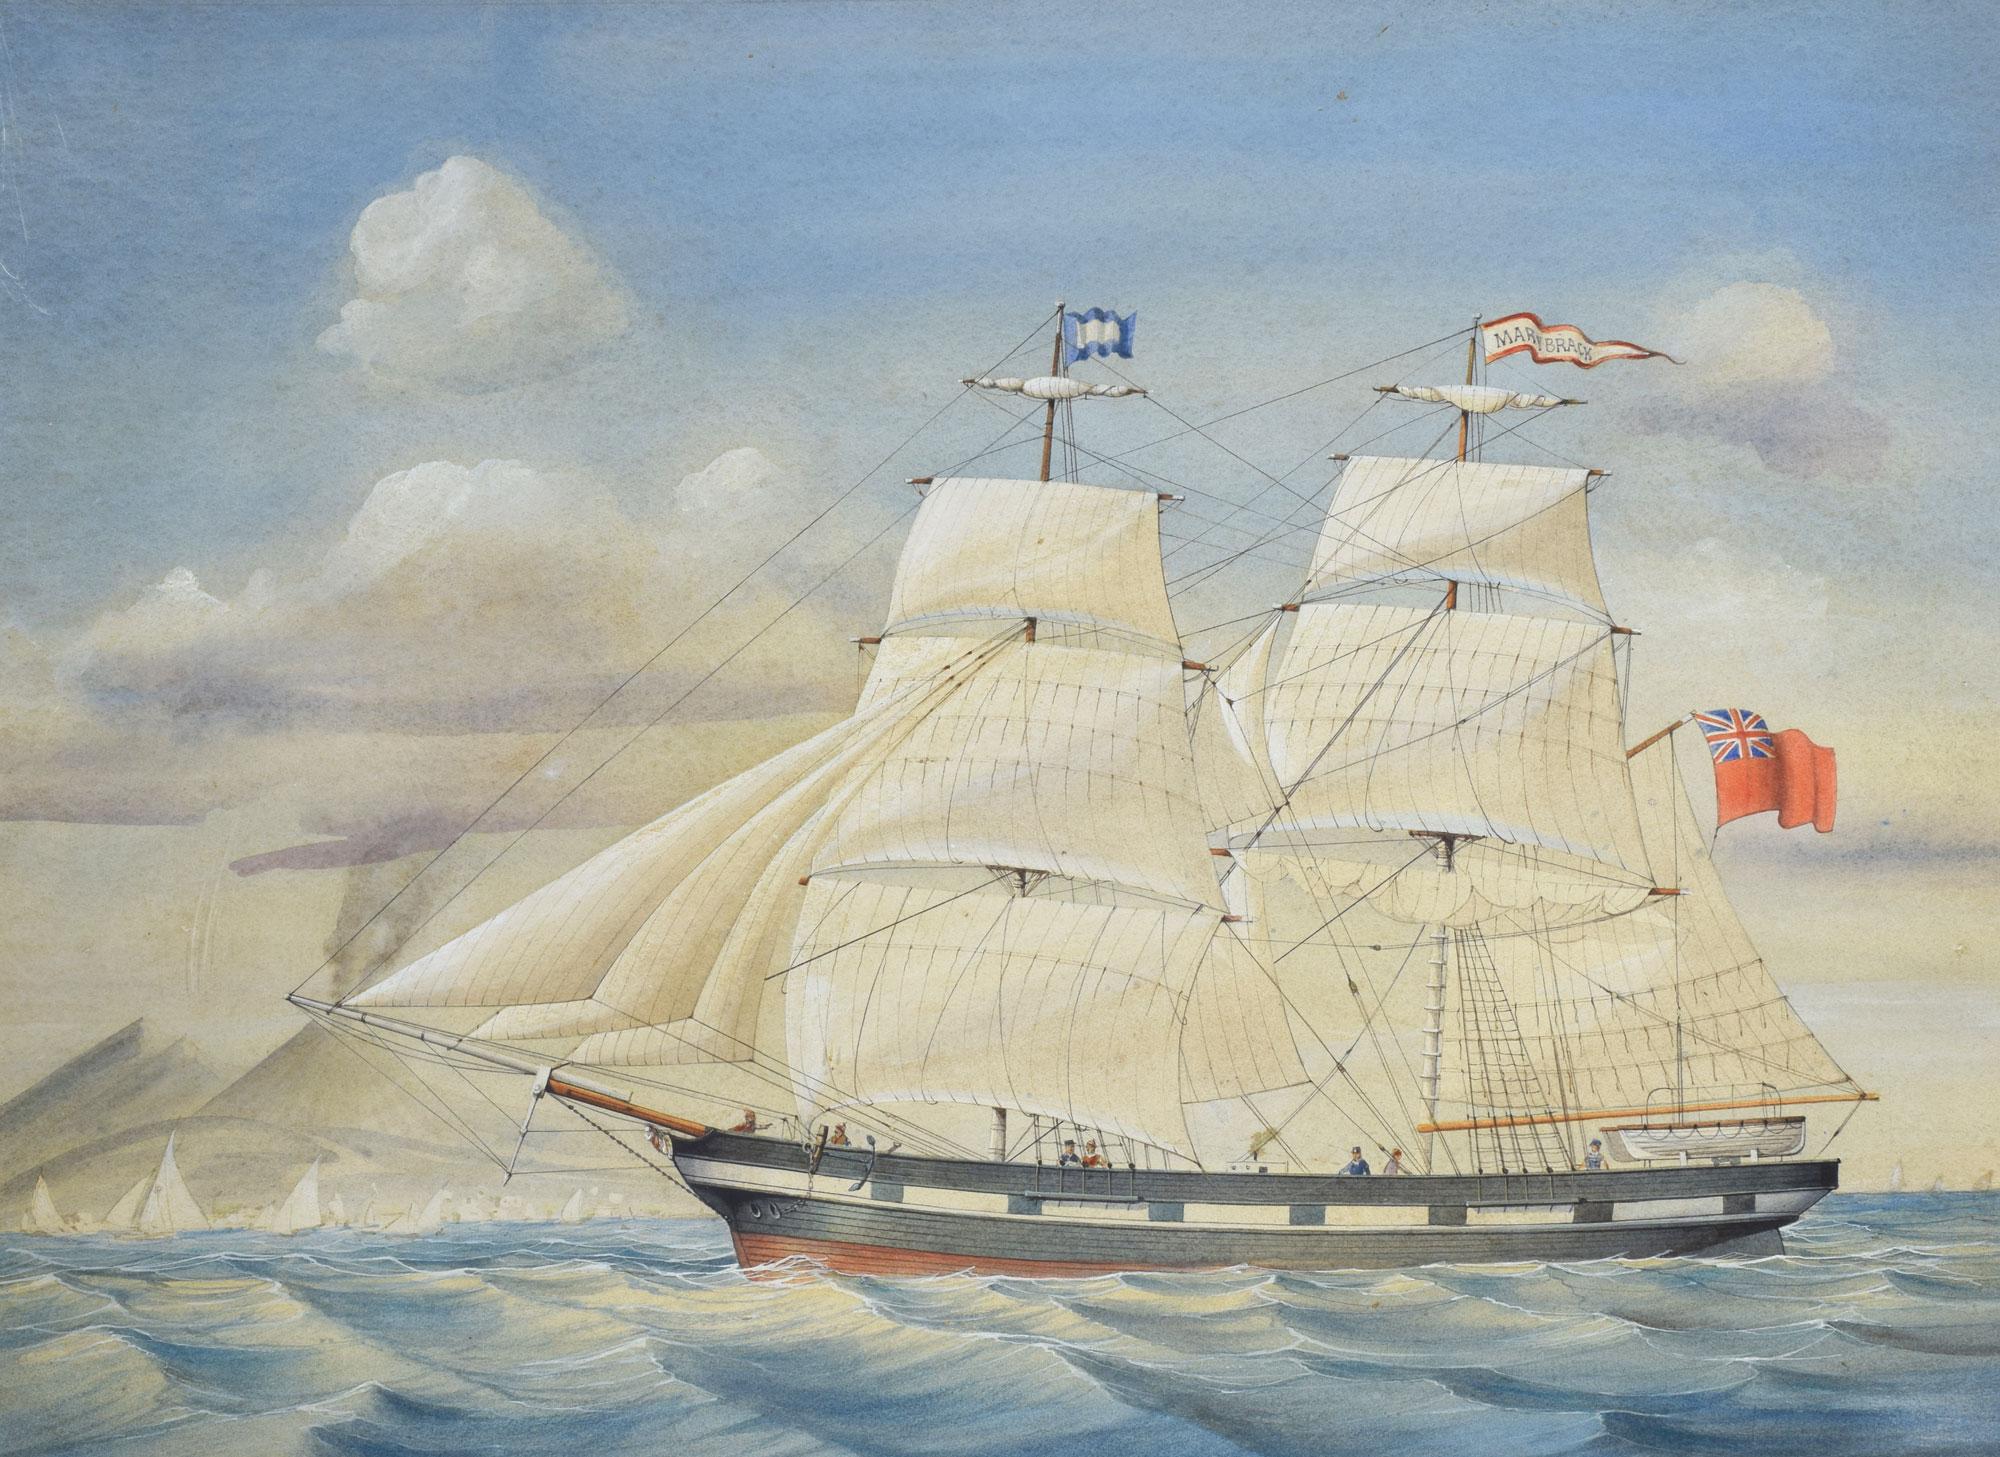 Grande aquarelle du navire The Mary Brack dans un cadre en chêne.
Dimensions
Hauteur 28 pouces
Longueur 34 pouces
largeur 1 pouce.